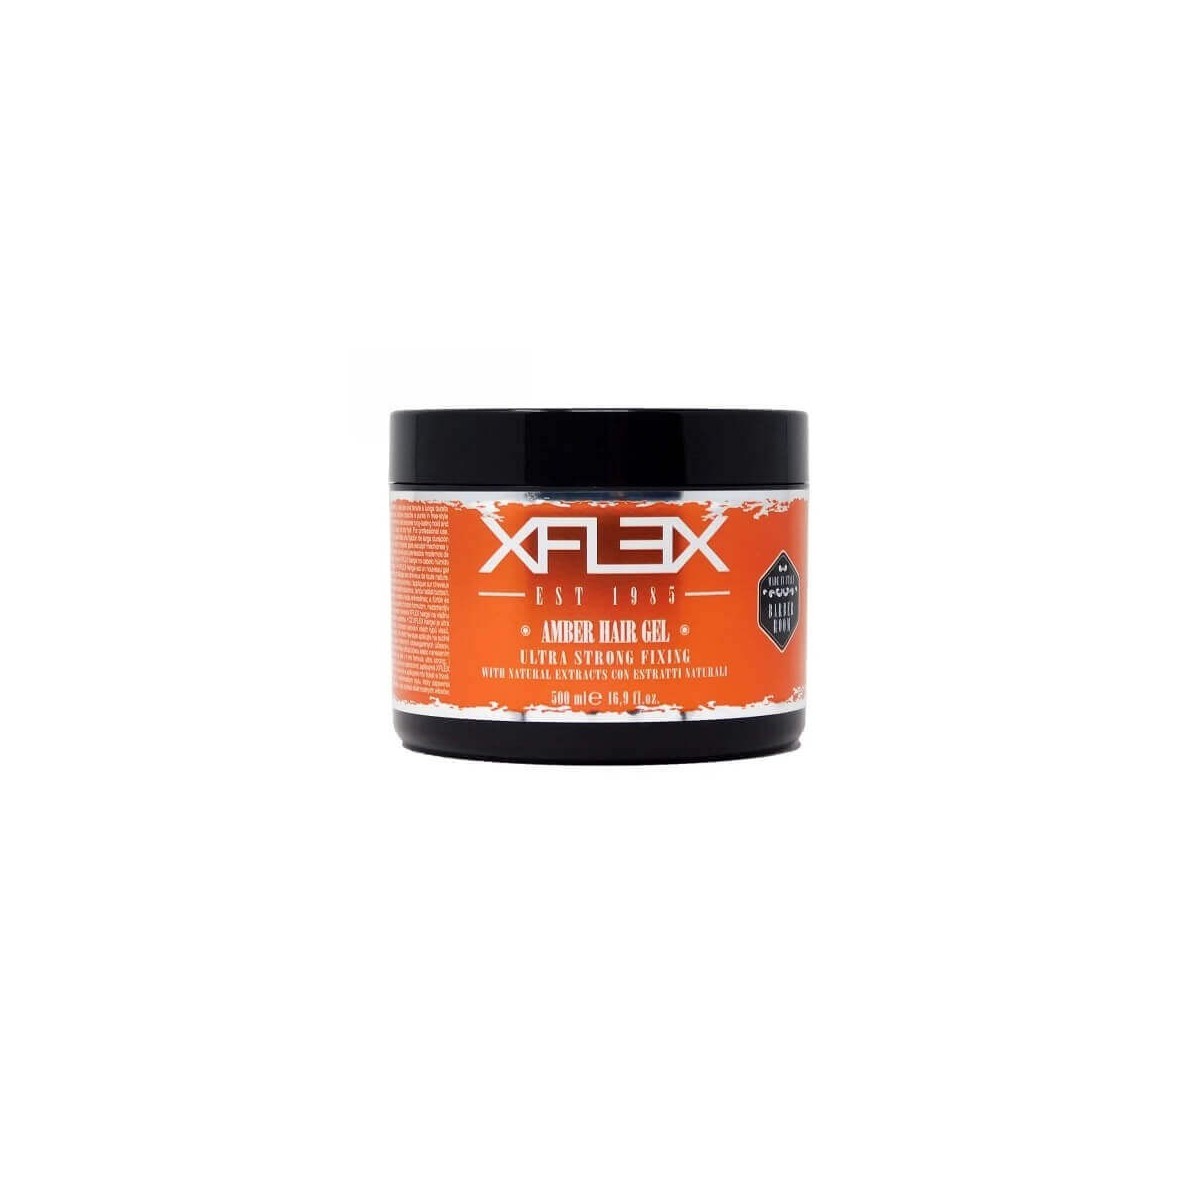 Xflex Amber Hair Gel Vaso Nuova Confezione 500ml